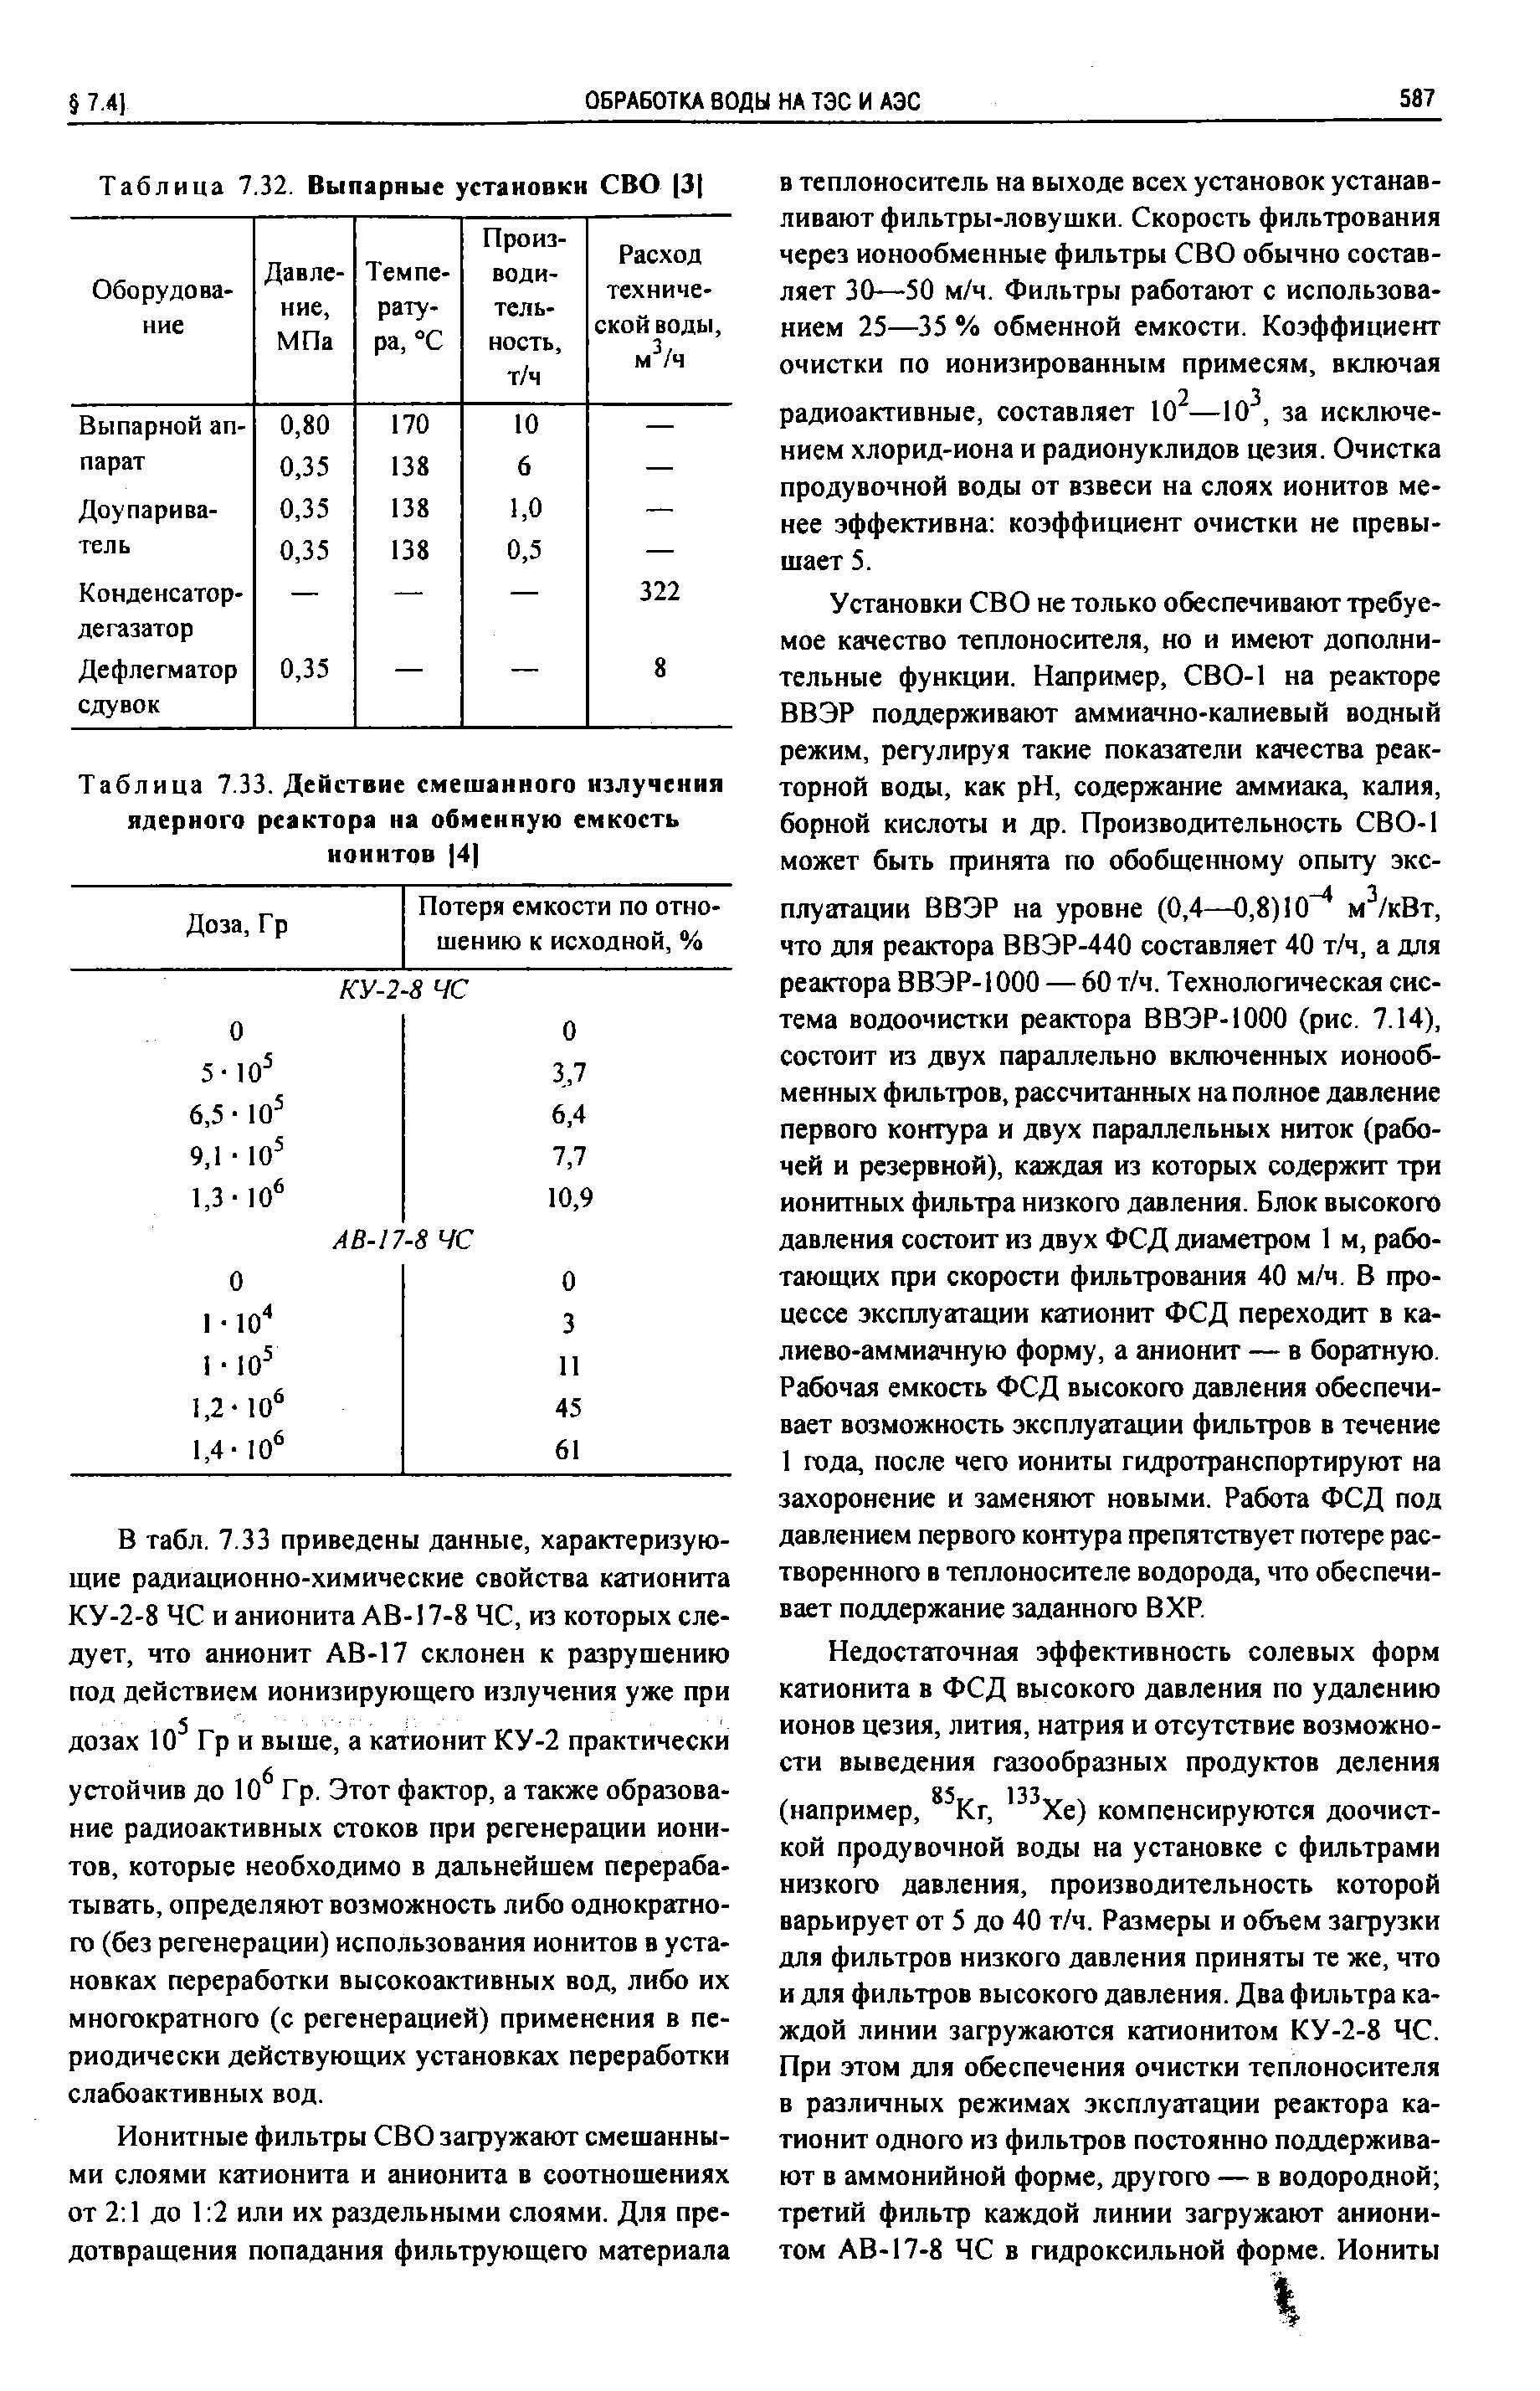 Таблица 7.33. Действие смешанного излучения ядериого реактора на обменную емкость ионитов 4 
